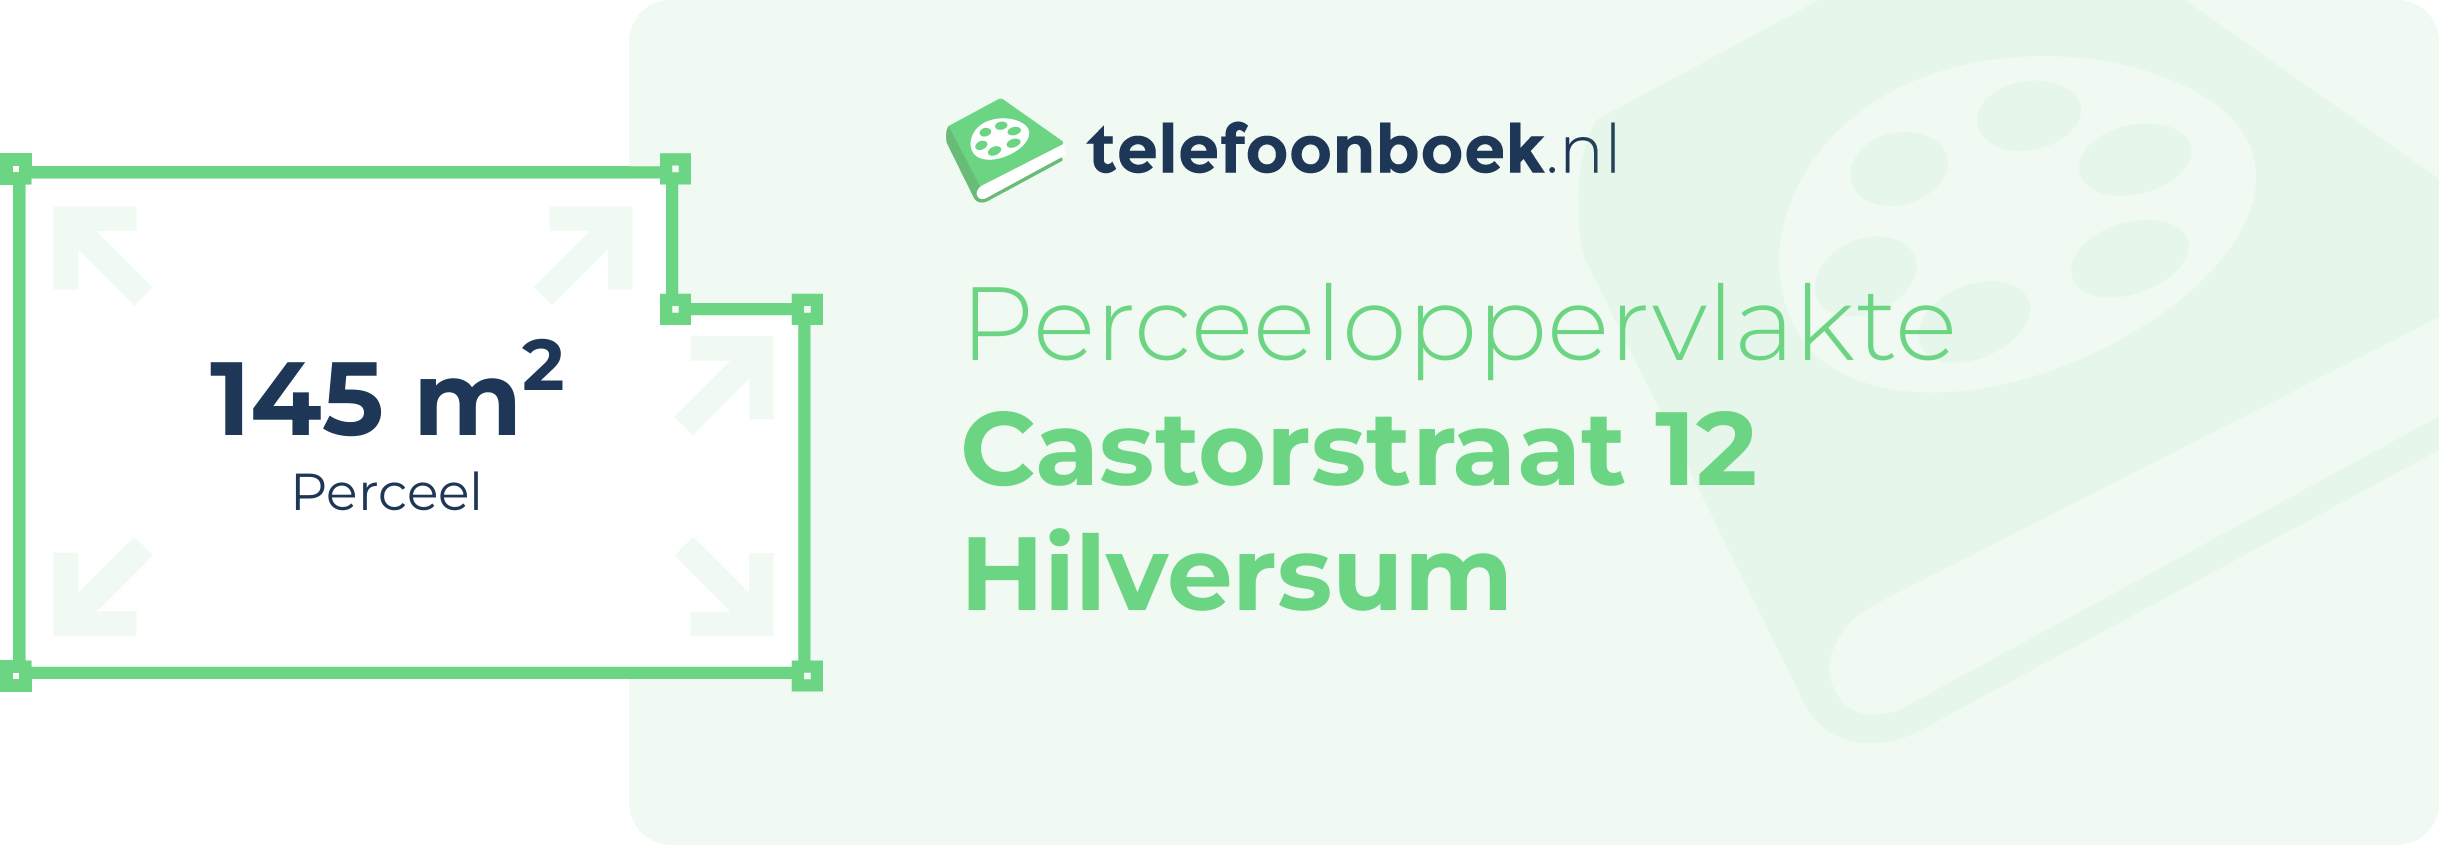 Perceeloppervlakte Castorstraat 12 Hilversum